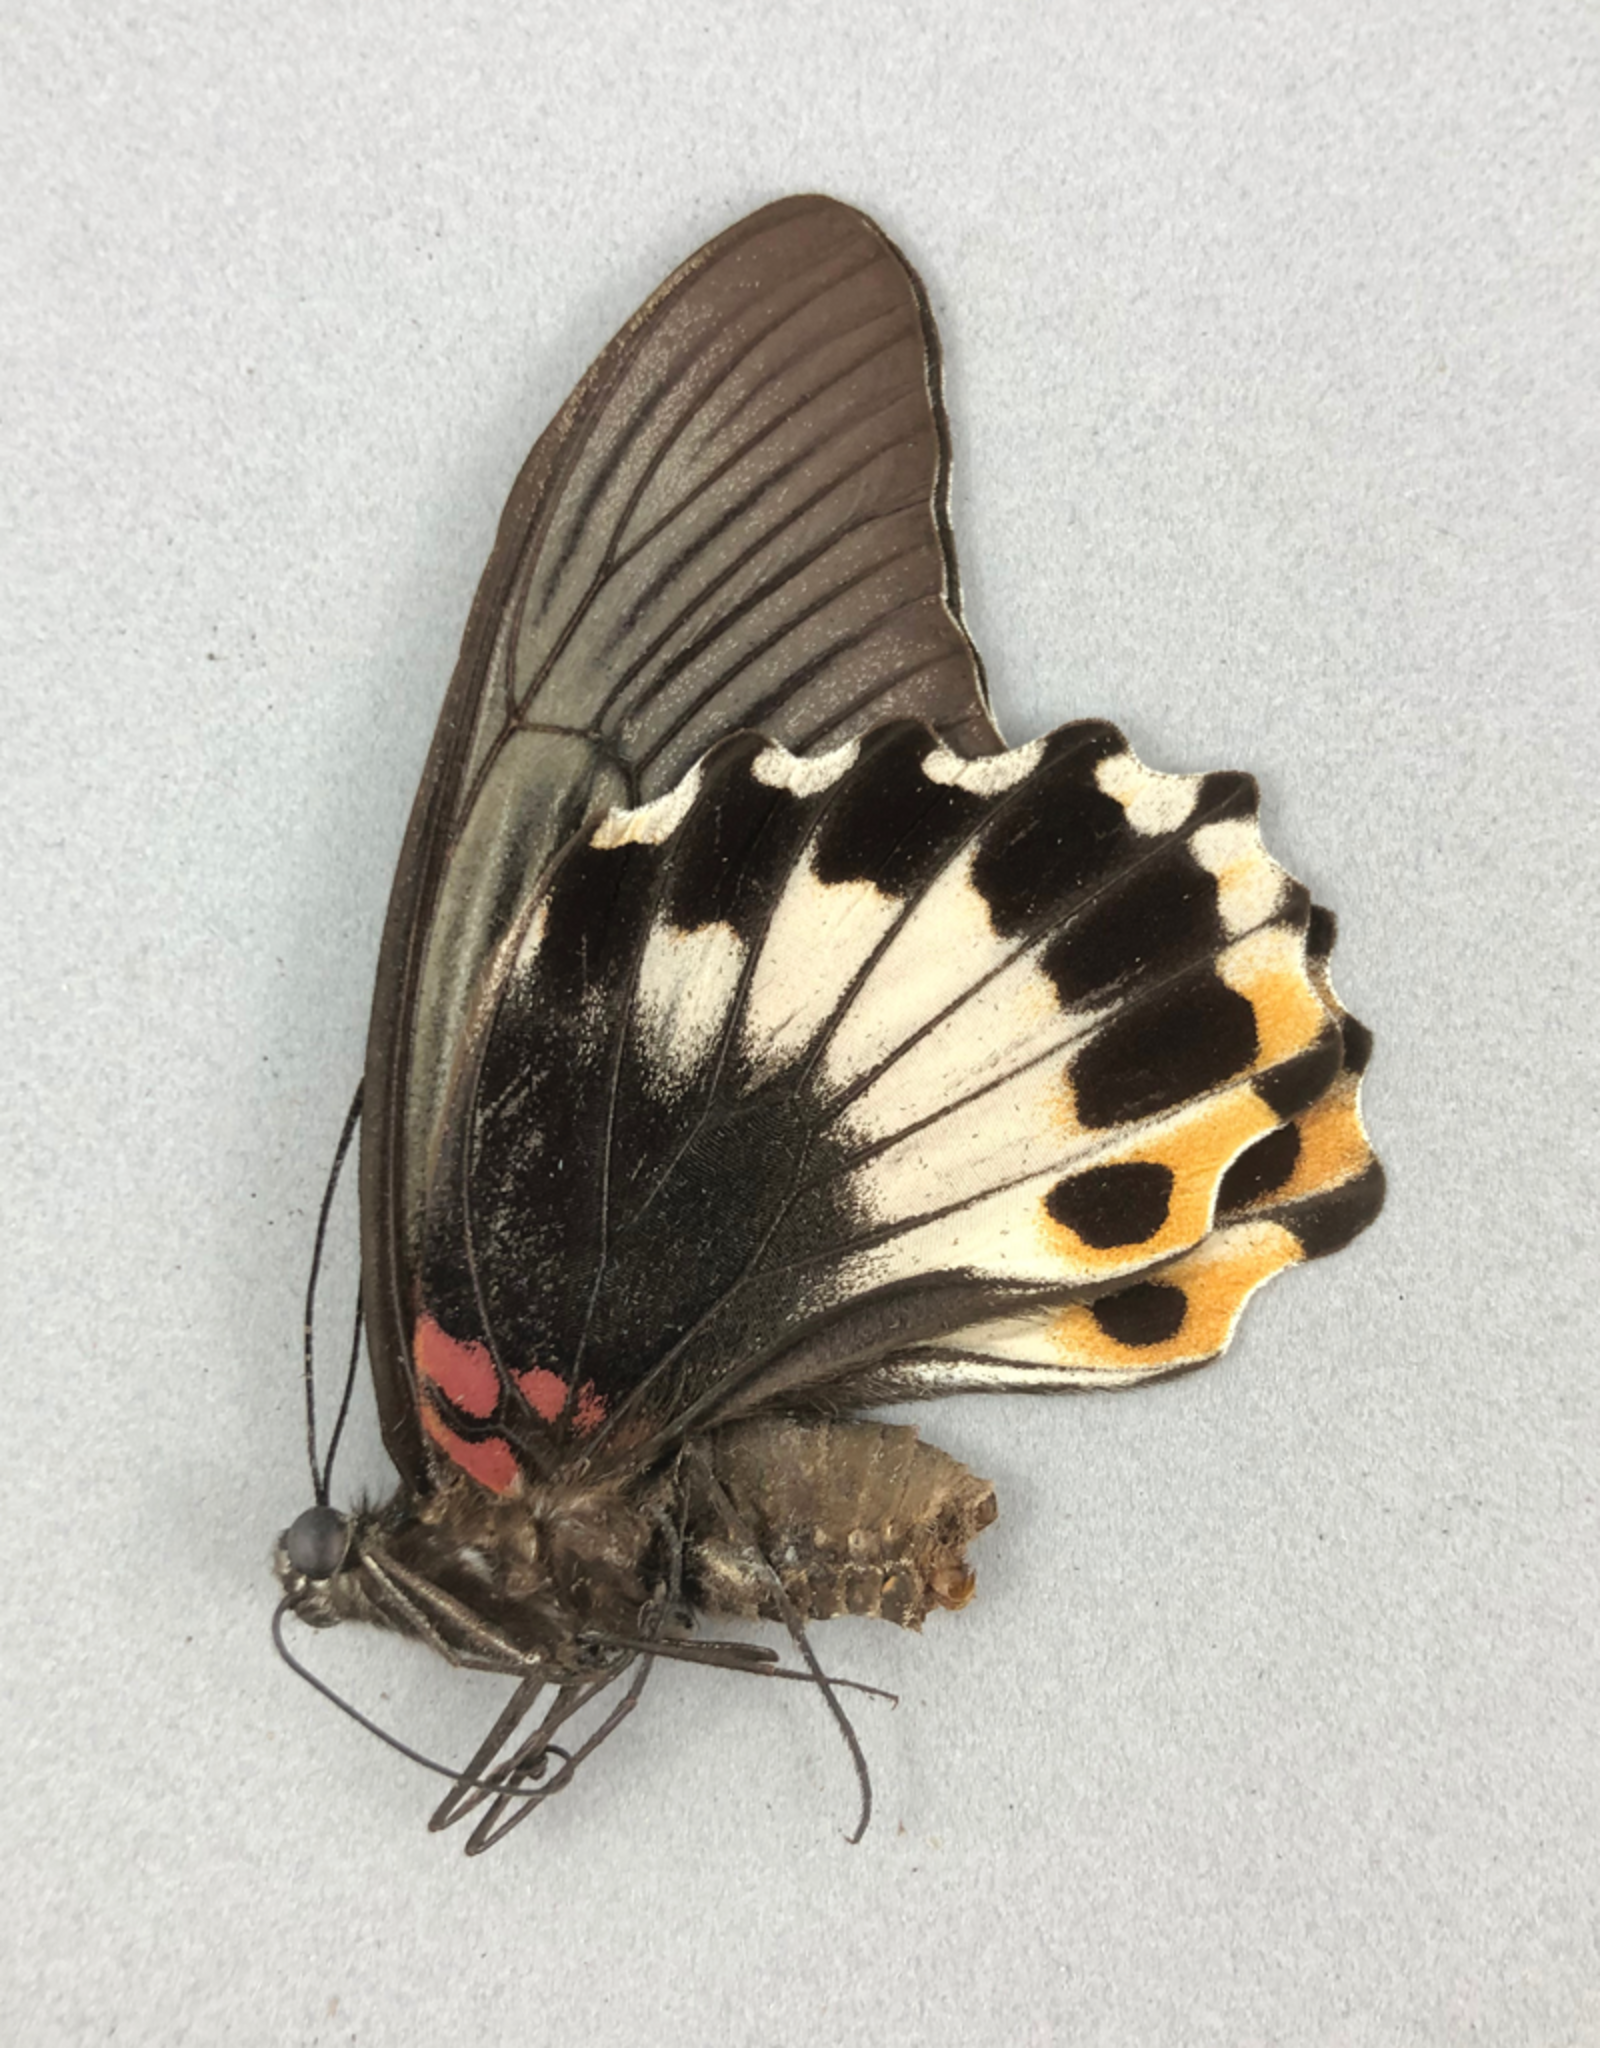 Papilio memnon memnon (tailless) F A1 Philippines